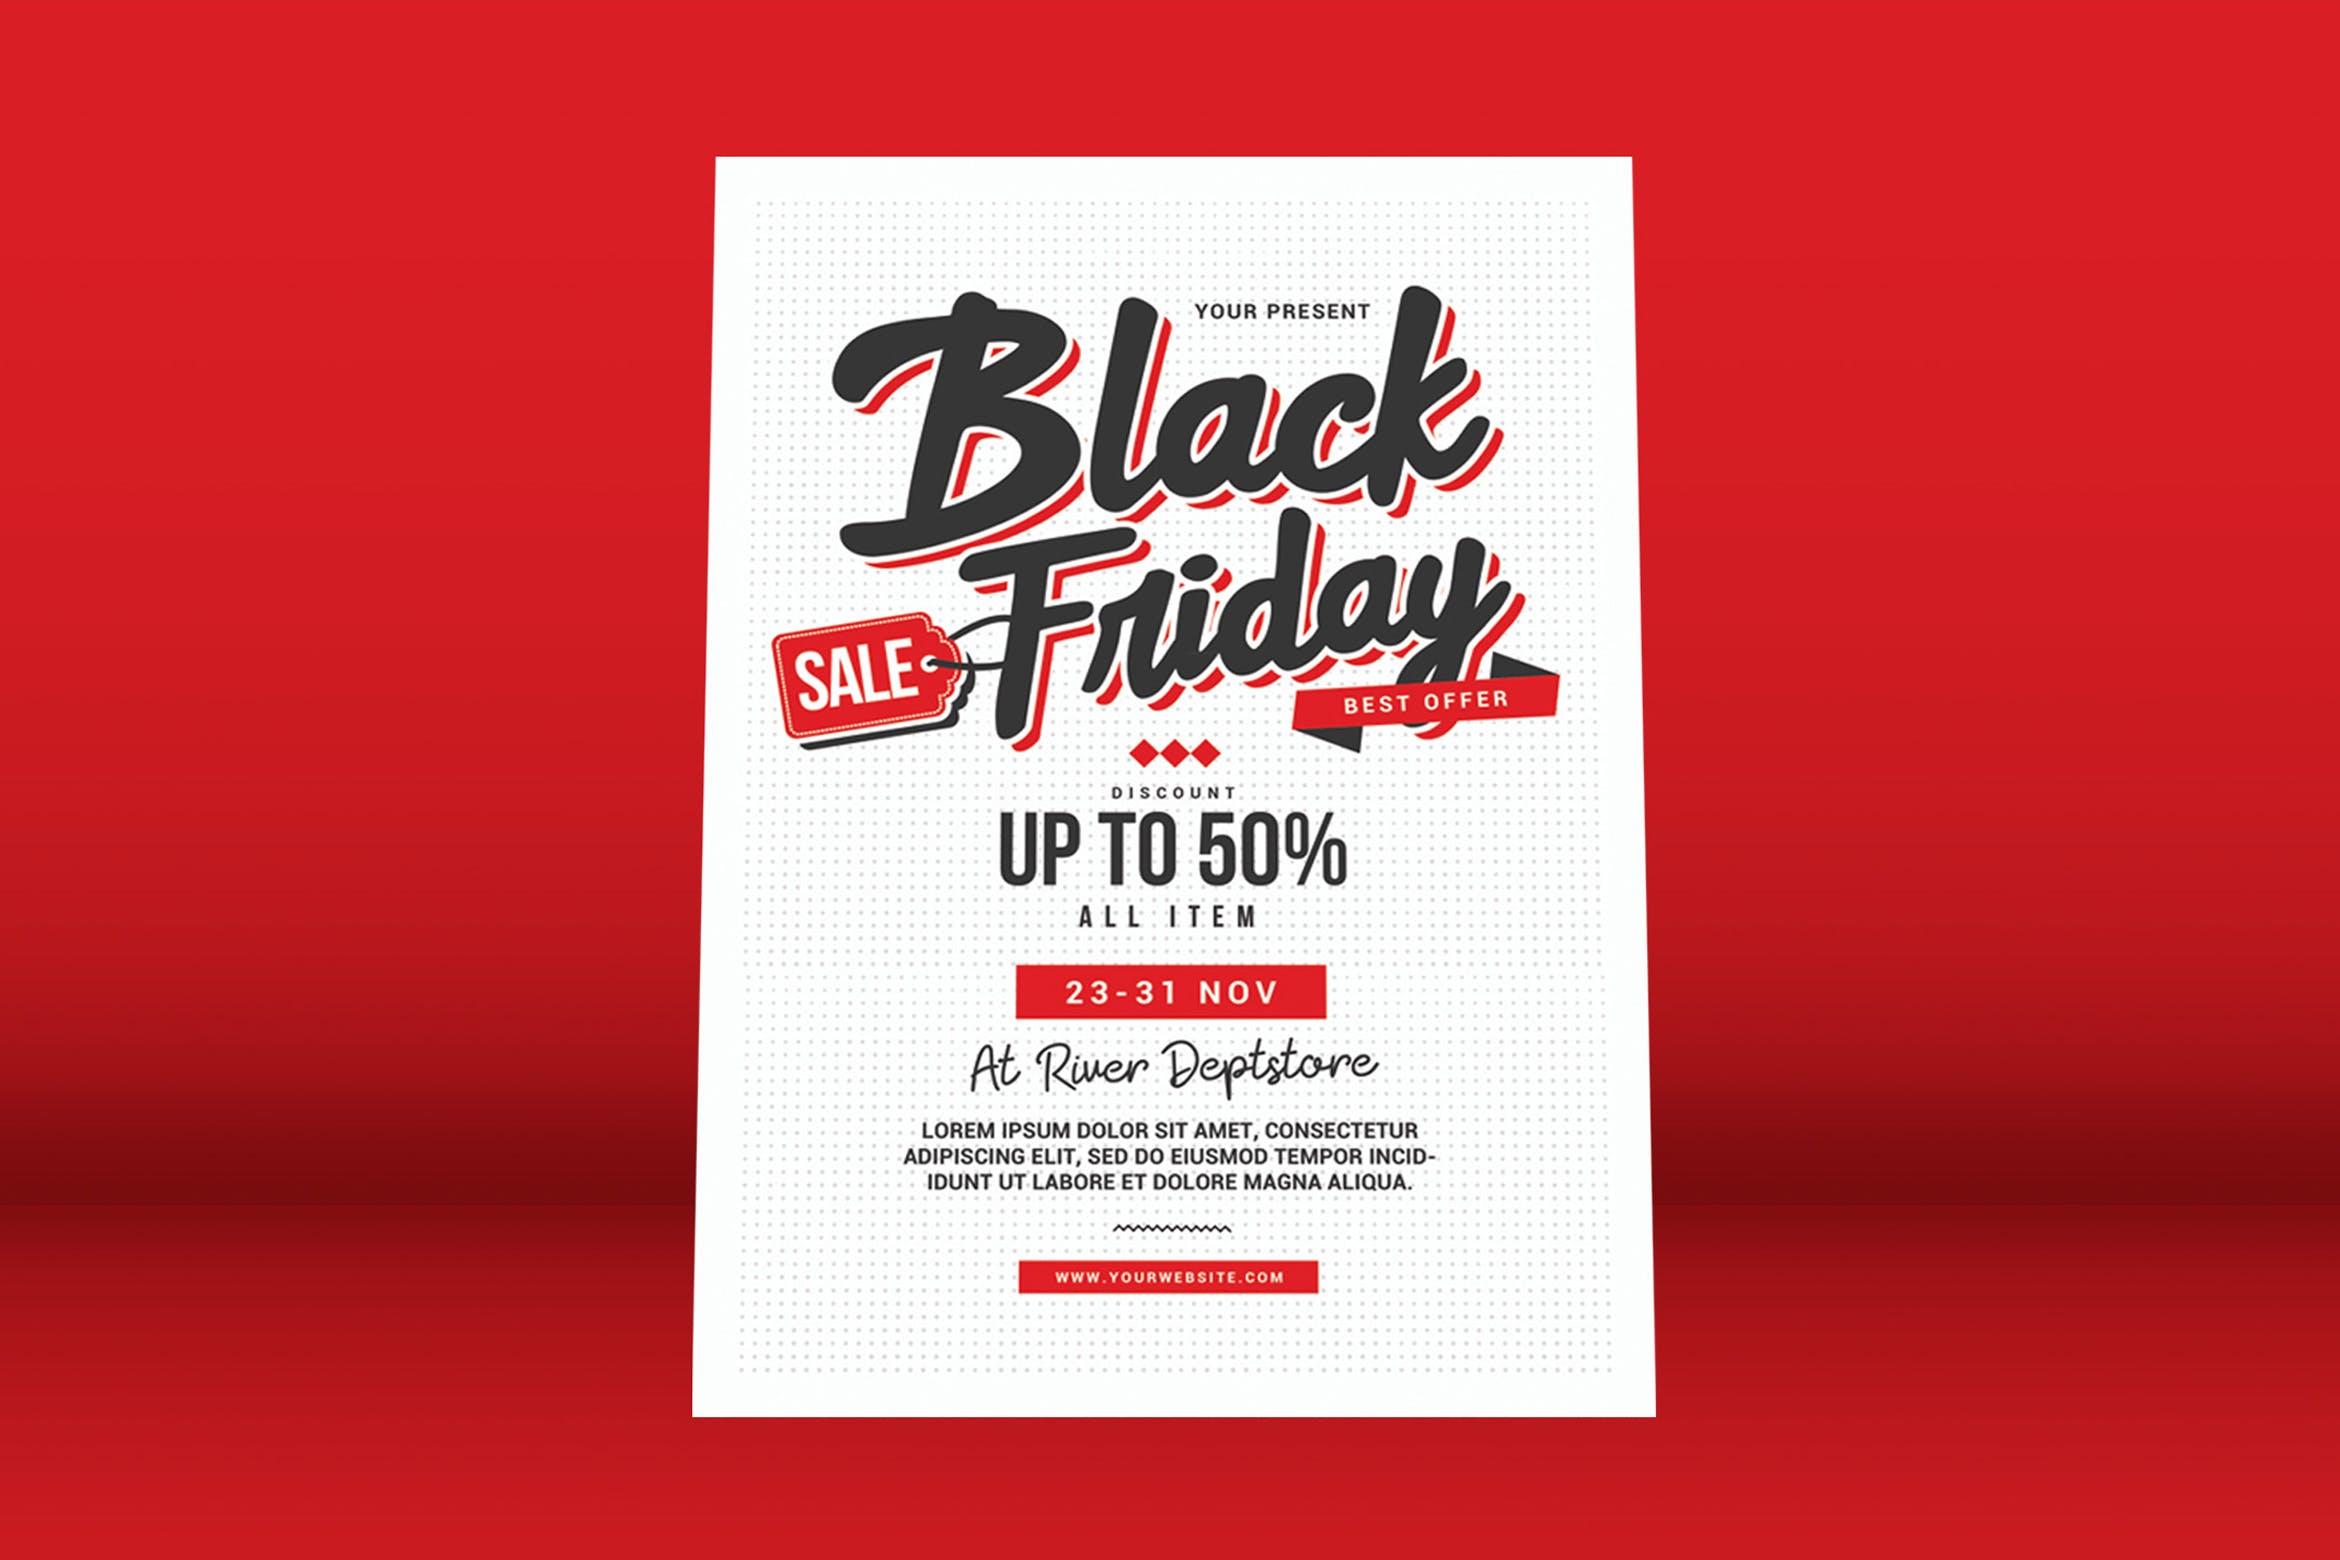 黒五全场促销优惠广告海报传单模板 Black Friday Sale Flyer插图